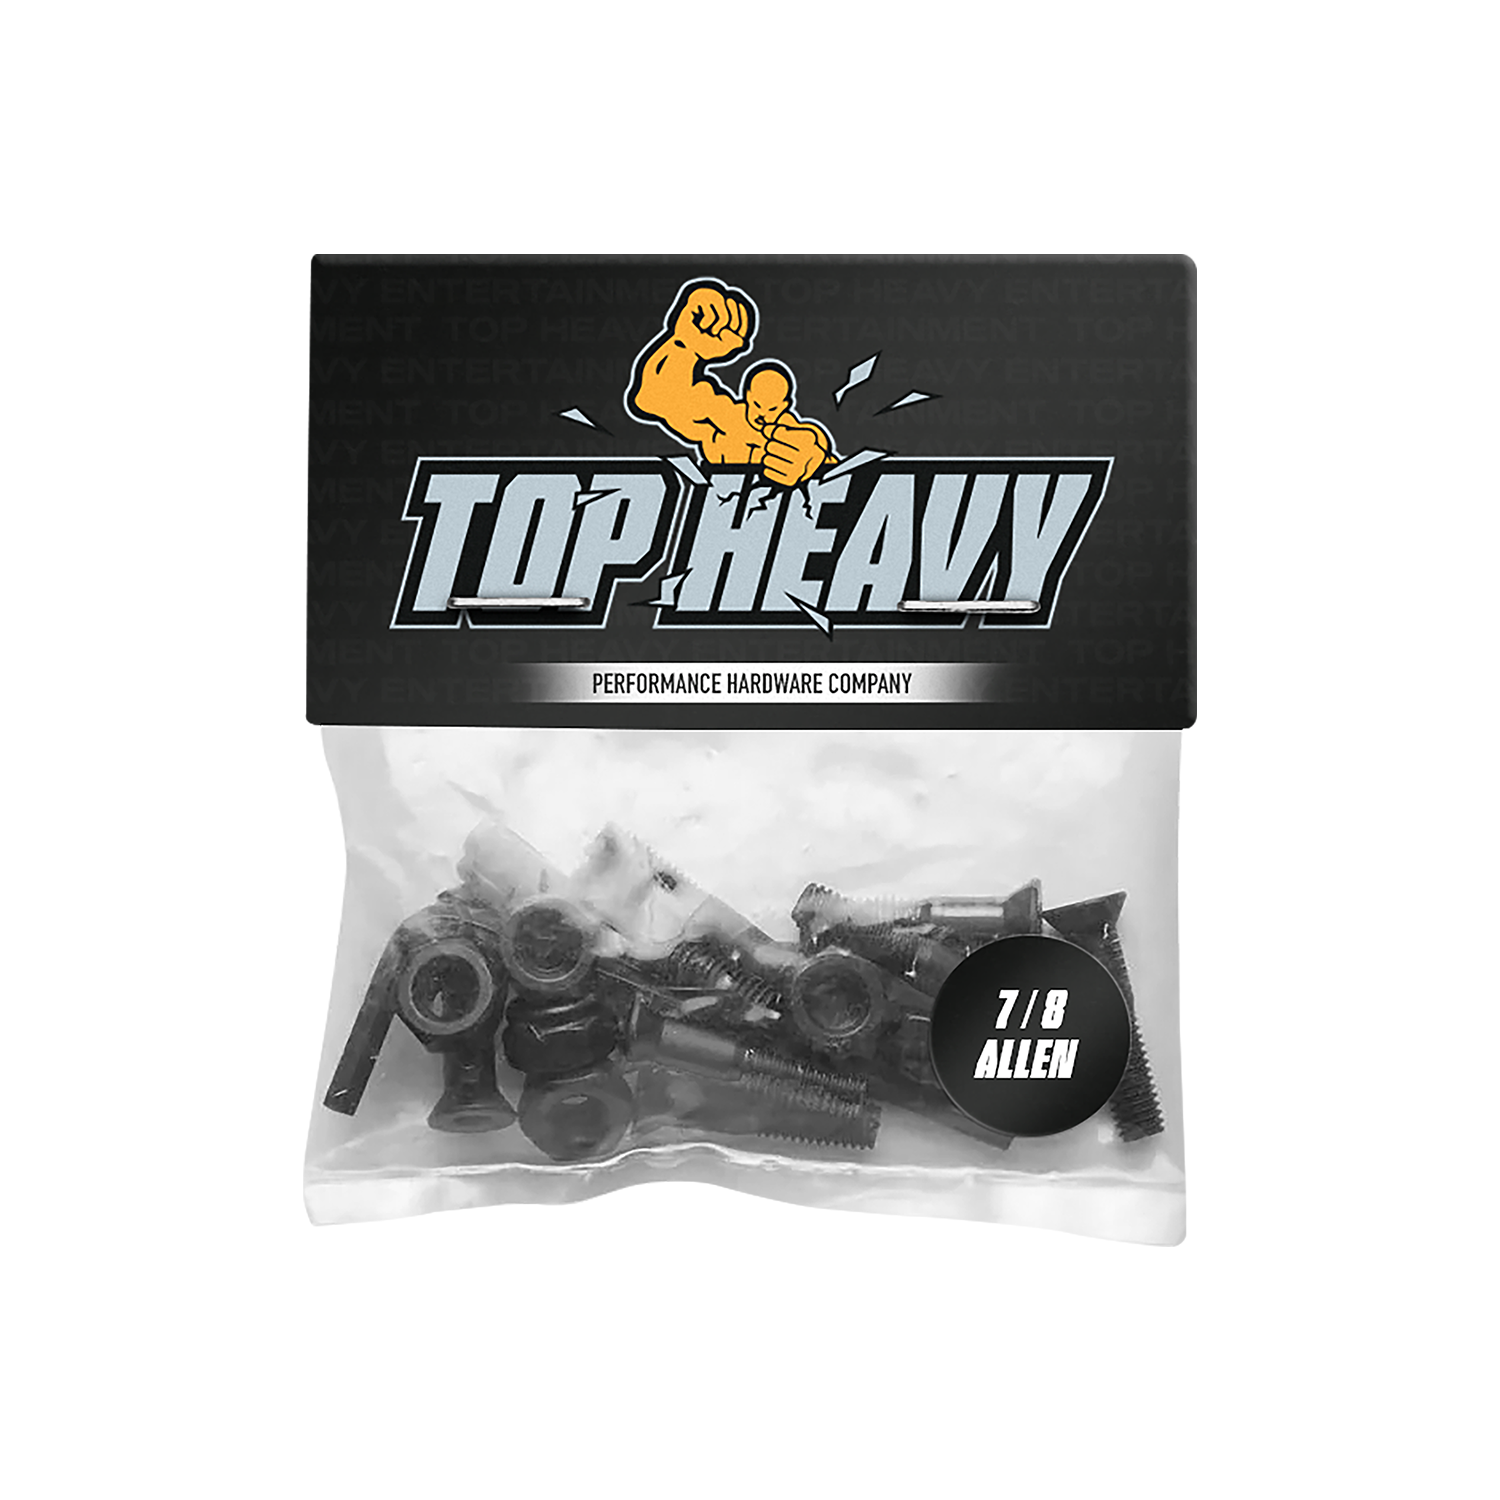 Heavy Hardware 7/8 Allen - TopHeavyEntertainment